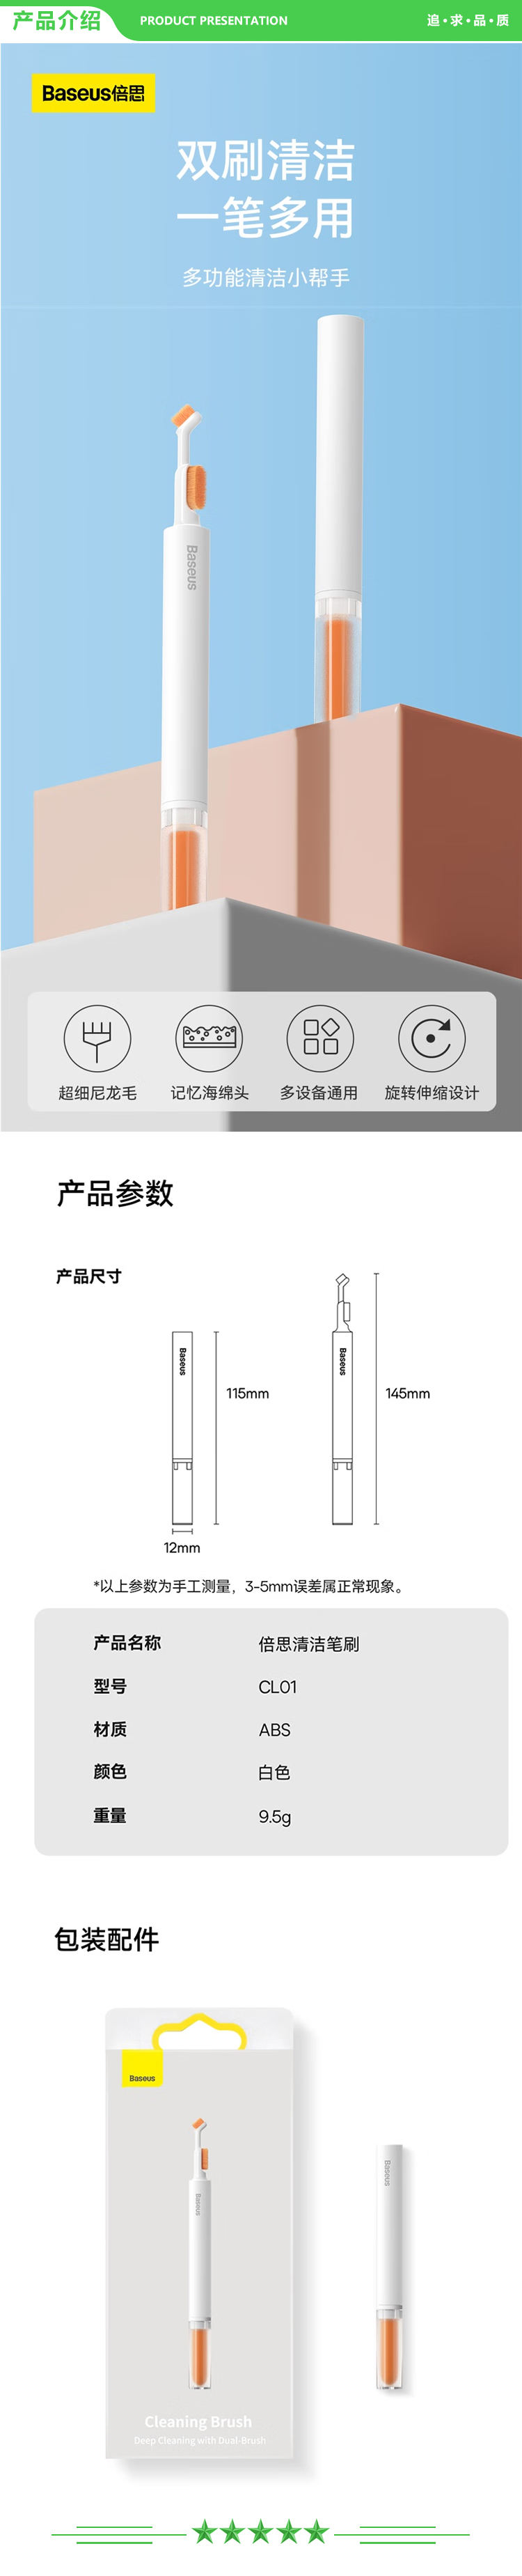 倍思 Baseus EX 蓝牙耳机 白色耳机清洁笔套装.jpg